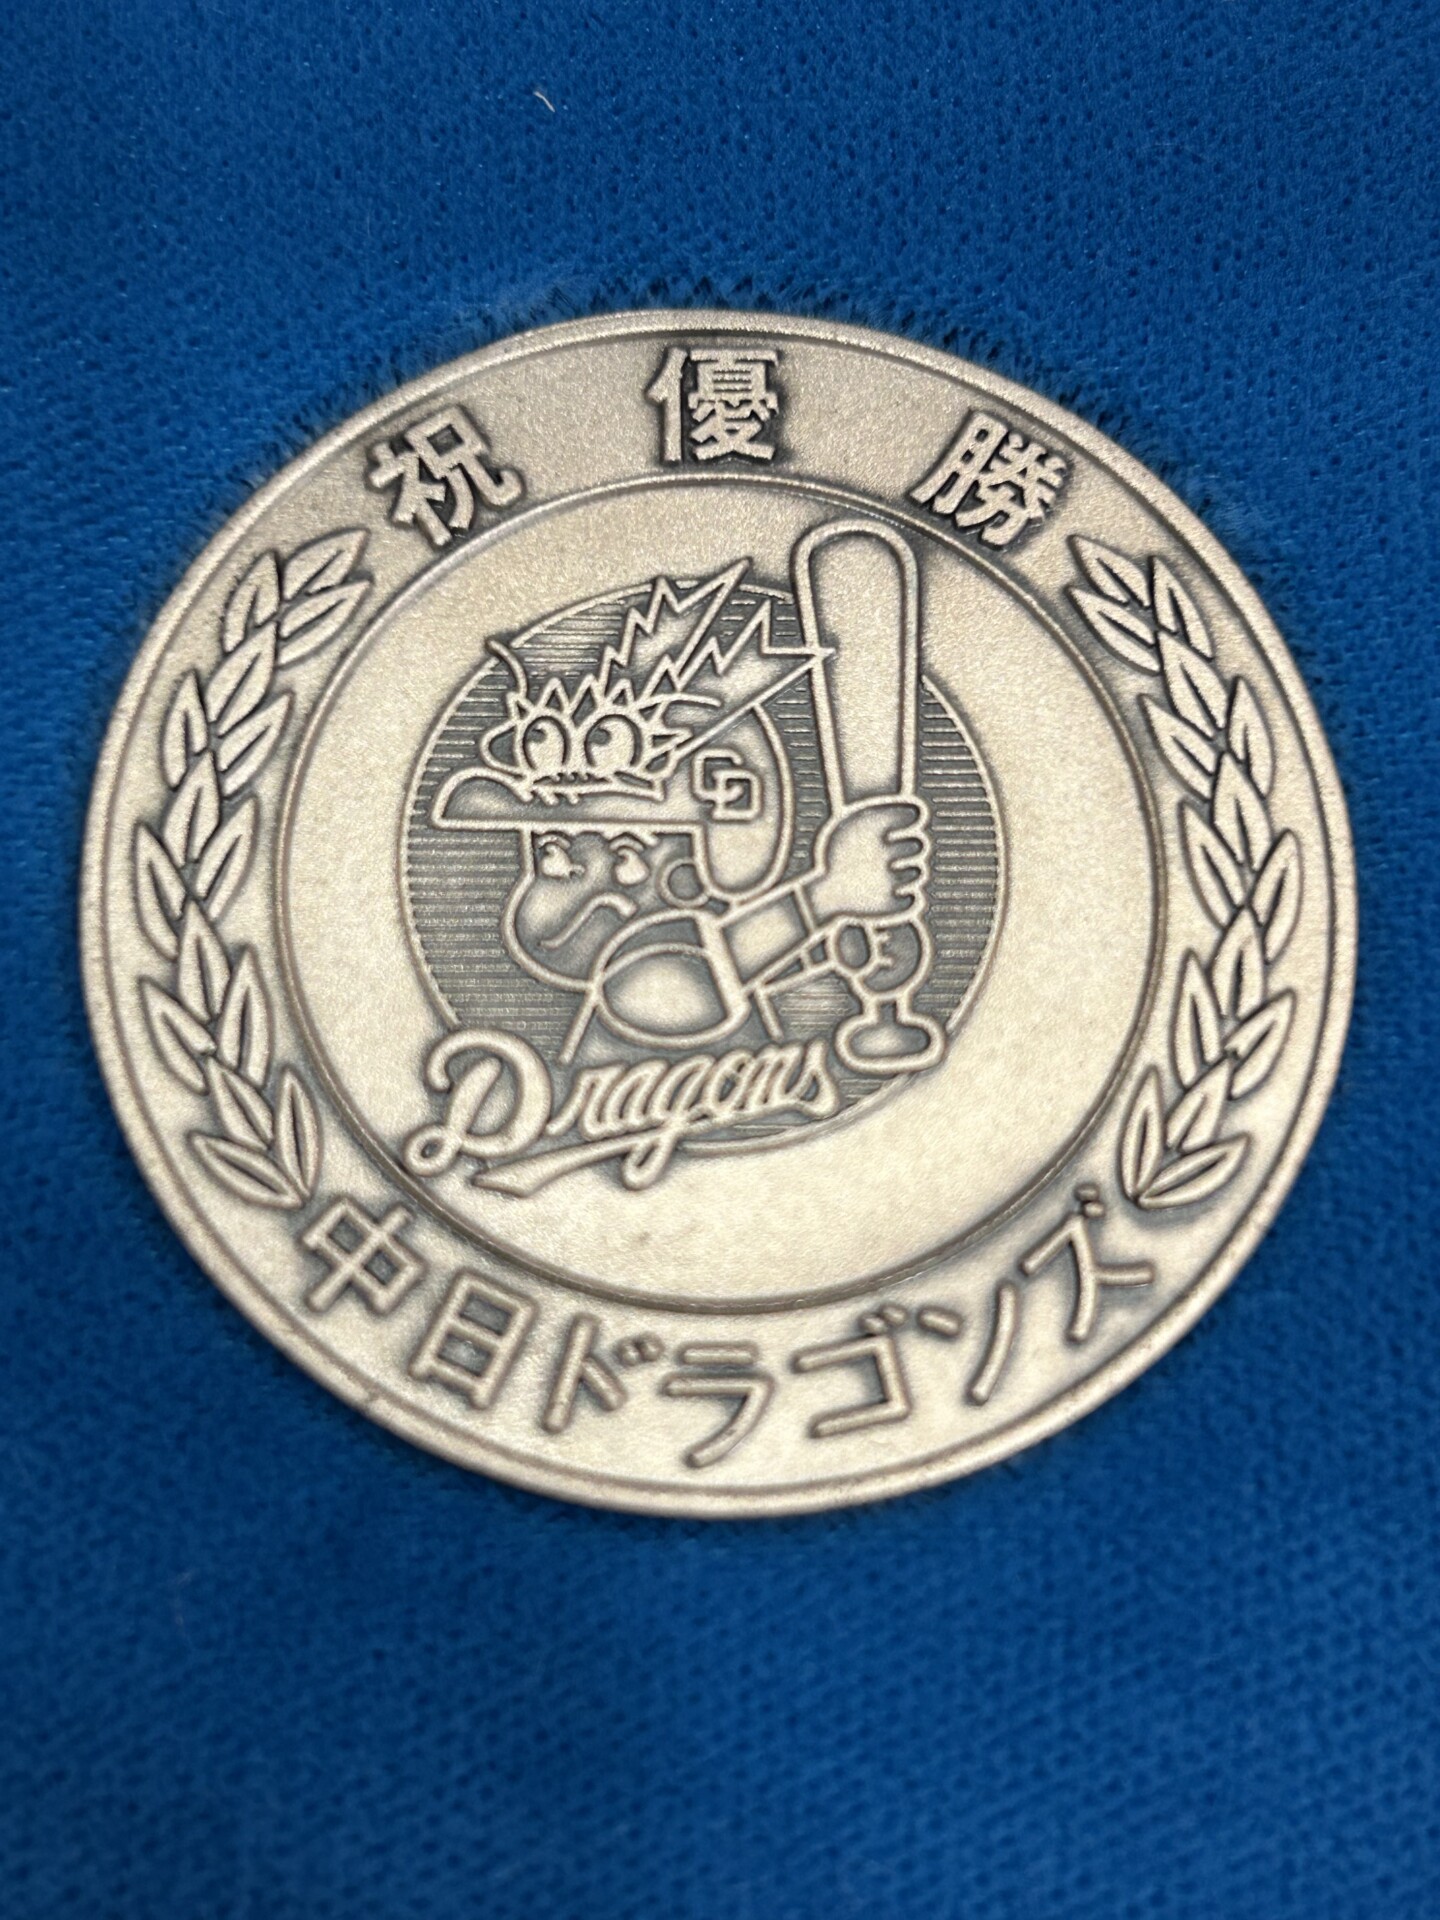 中日ドラゴンズ 1982年優勝記念銀メダル買取